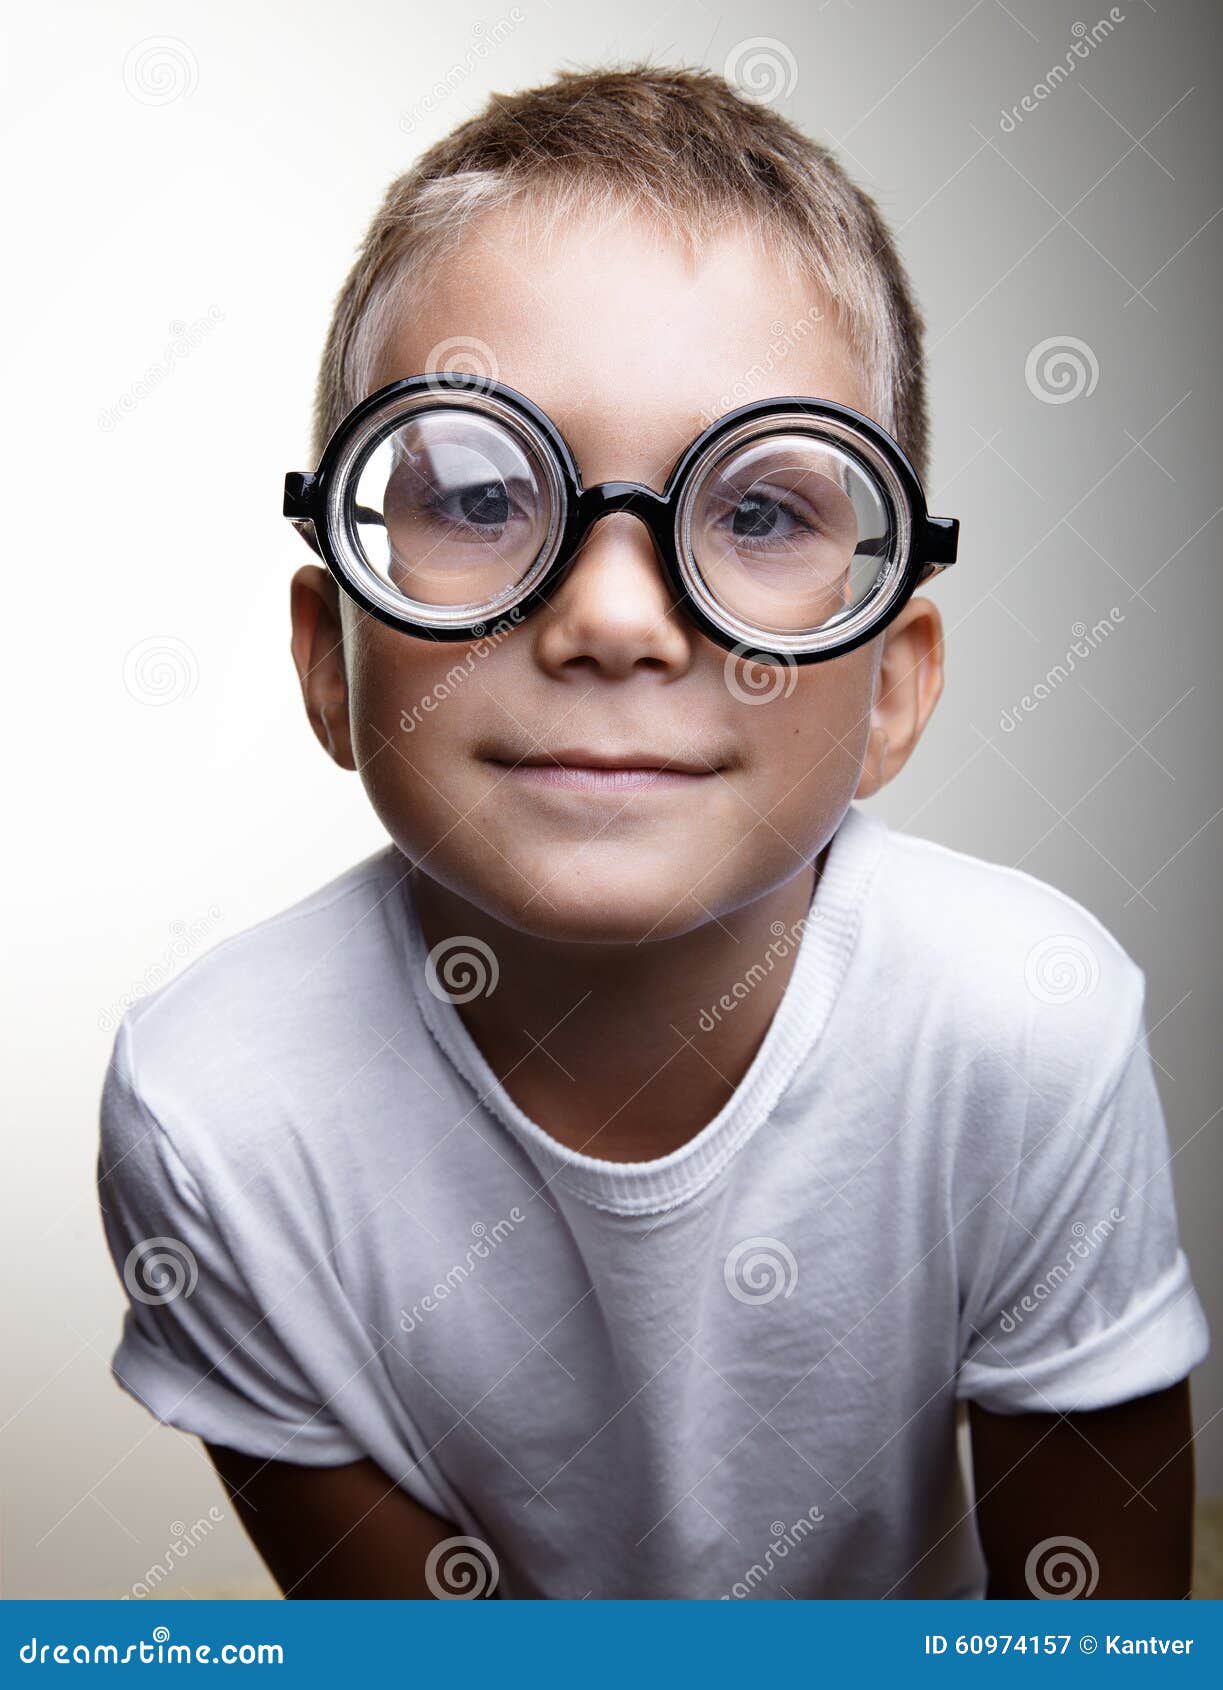 Мальчик с большими очками. Мальчик в очках. Маленький мальчик с очками. Маленький мальчик в очках. Дети с очками лупами.